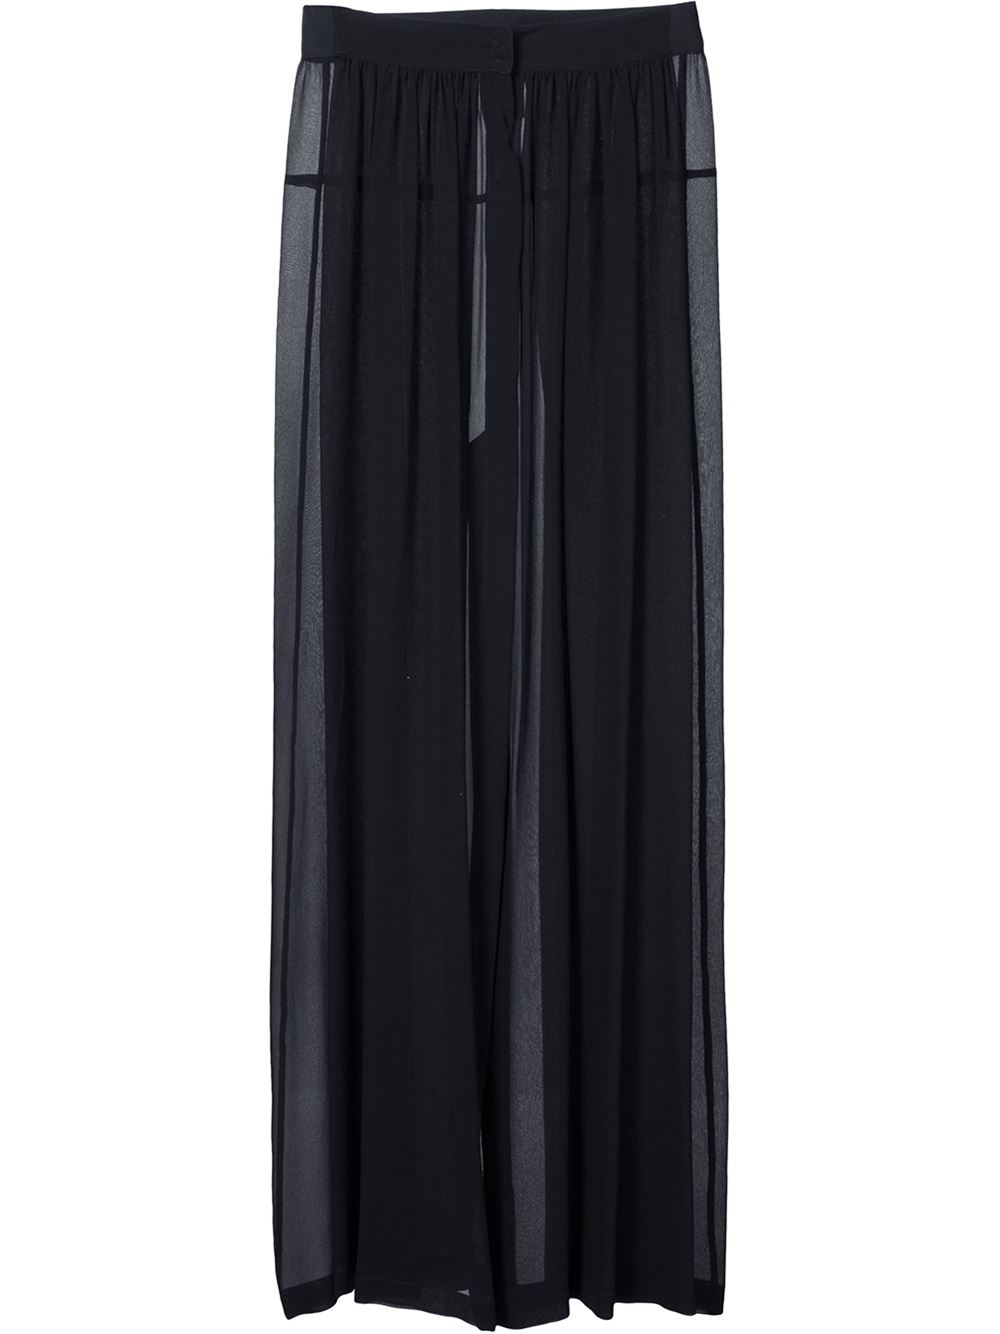 Ann demeulemeester 'georgia' Skirt in Black | Lyst